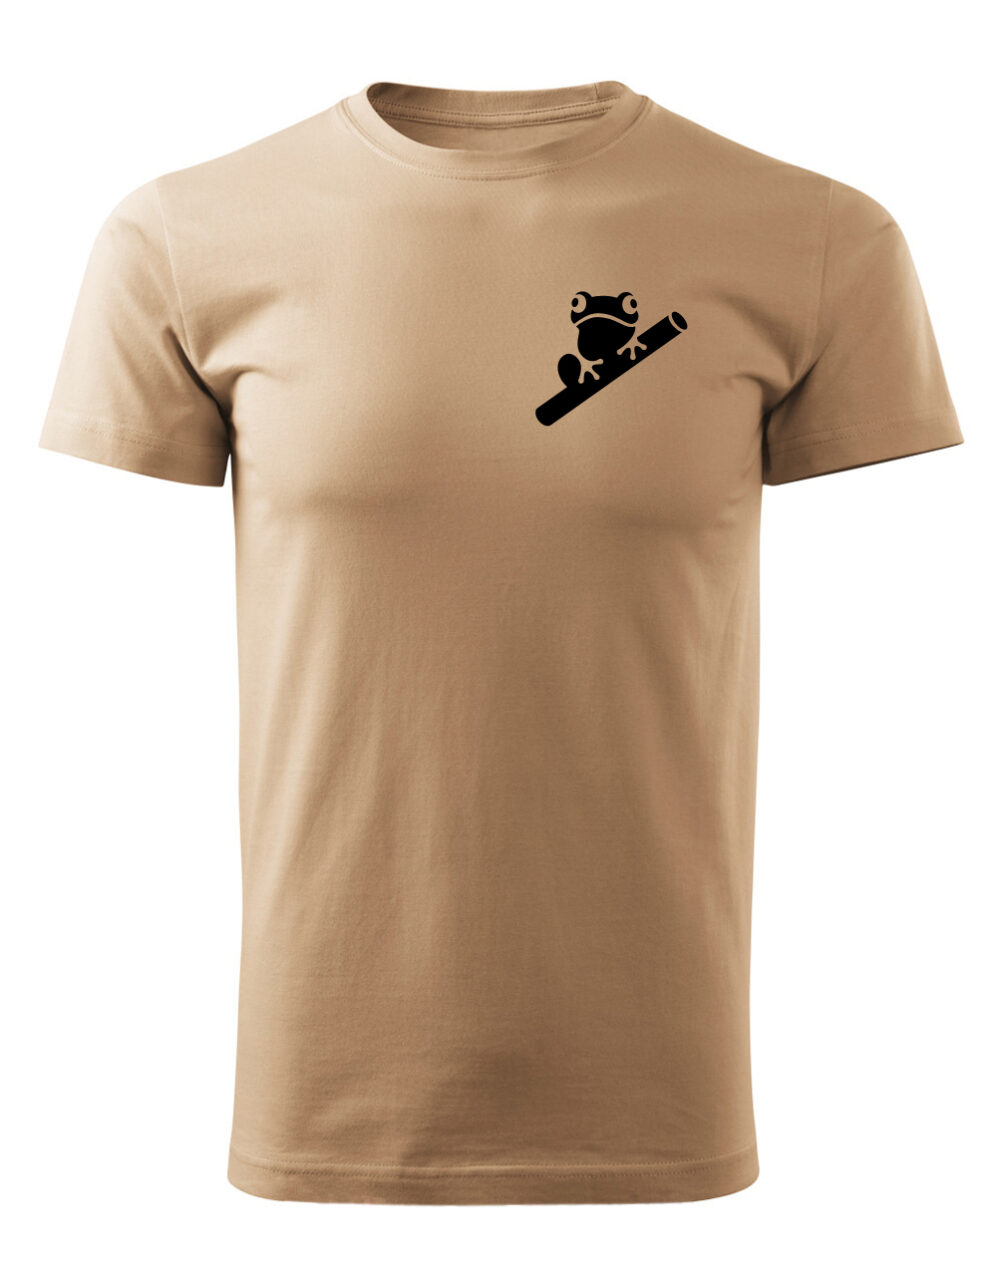 Pánské tričko s potiskem Žába písková